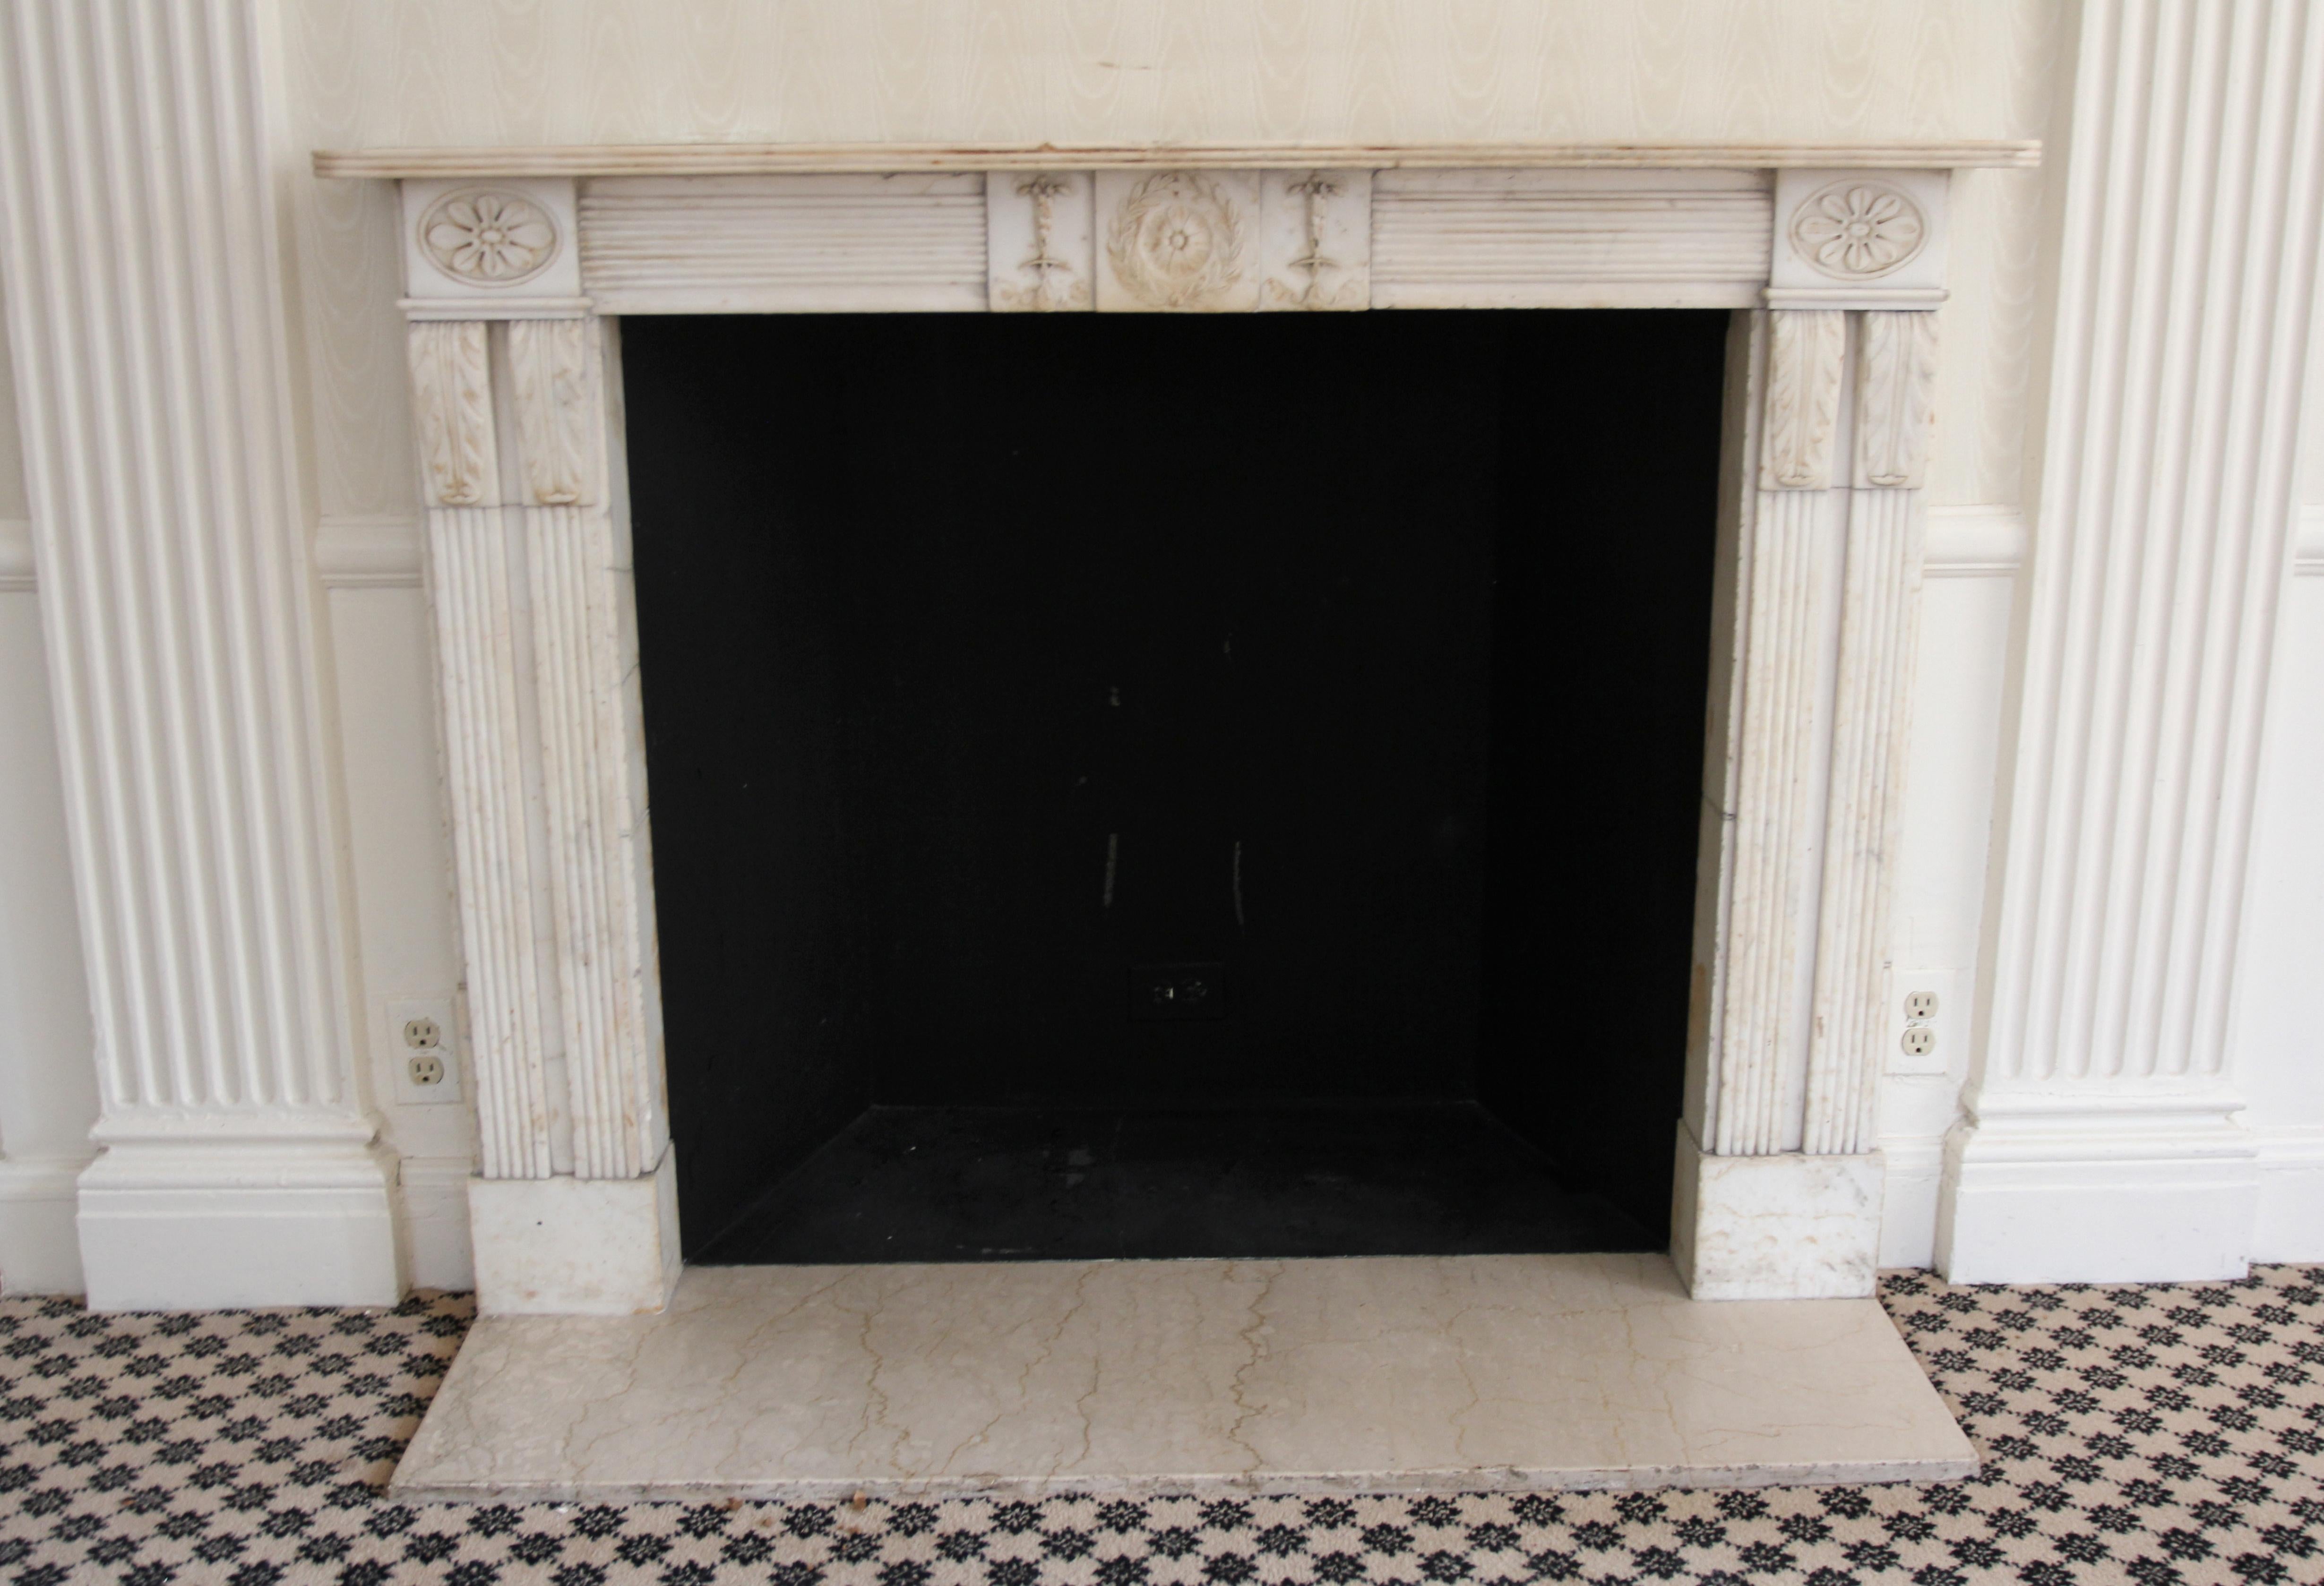 Une cheminée en marbre statuaire de style Régence anglaise des années 1810, complétée par un nouveau foyer. Le marbre a conservé son état remarquable et présente des embellissements captivants : des chérubins dansants et ludiques ornent le panneau